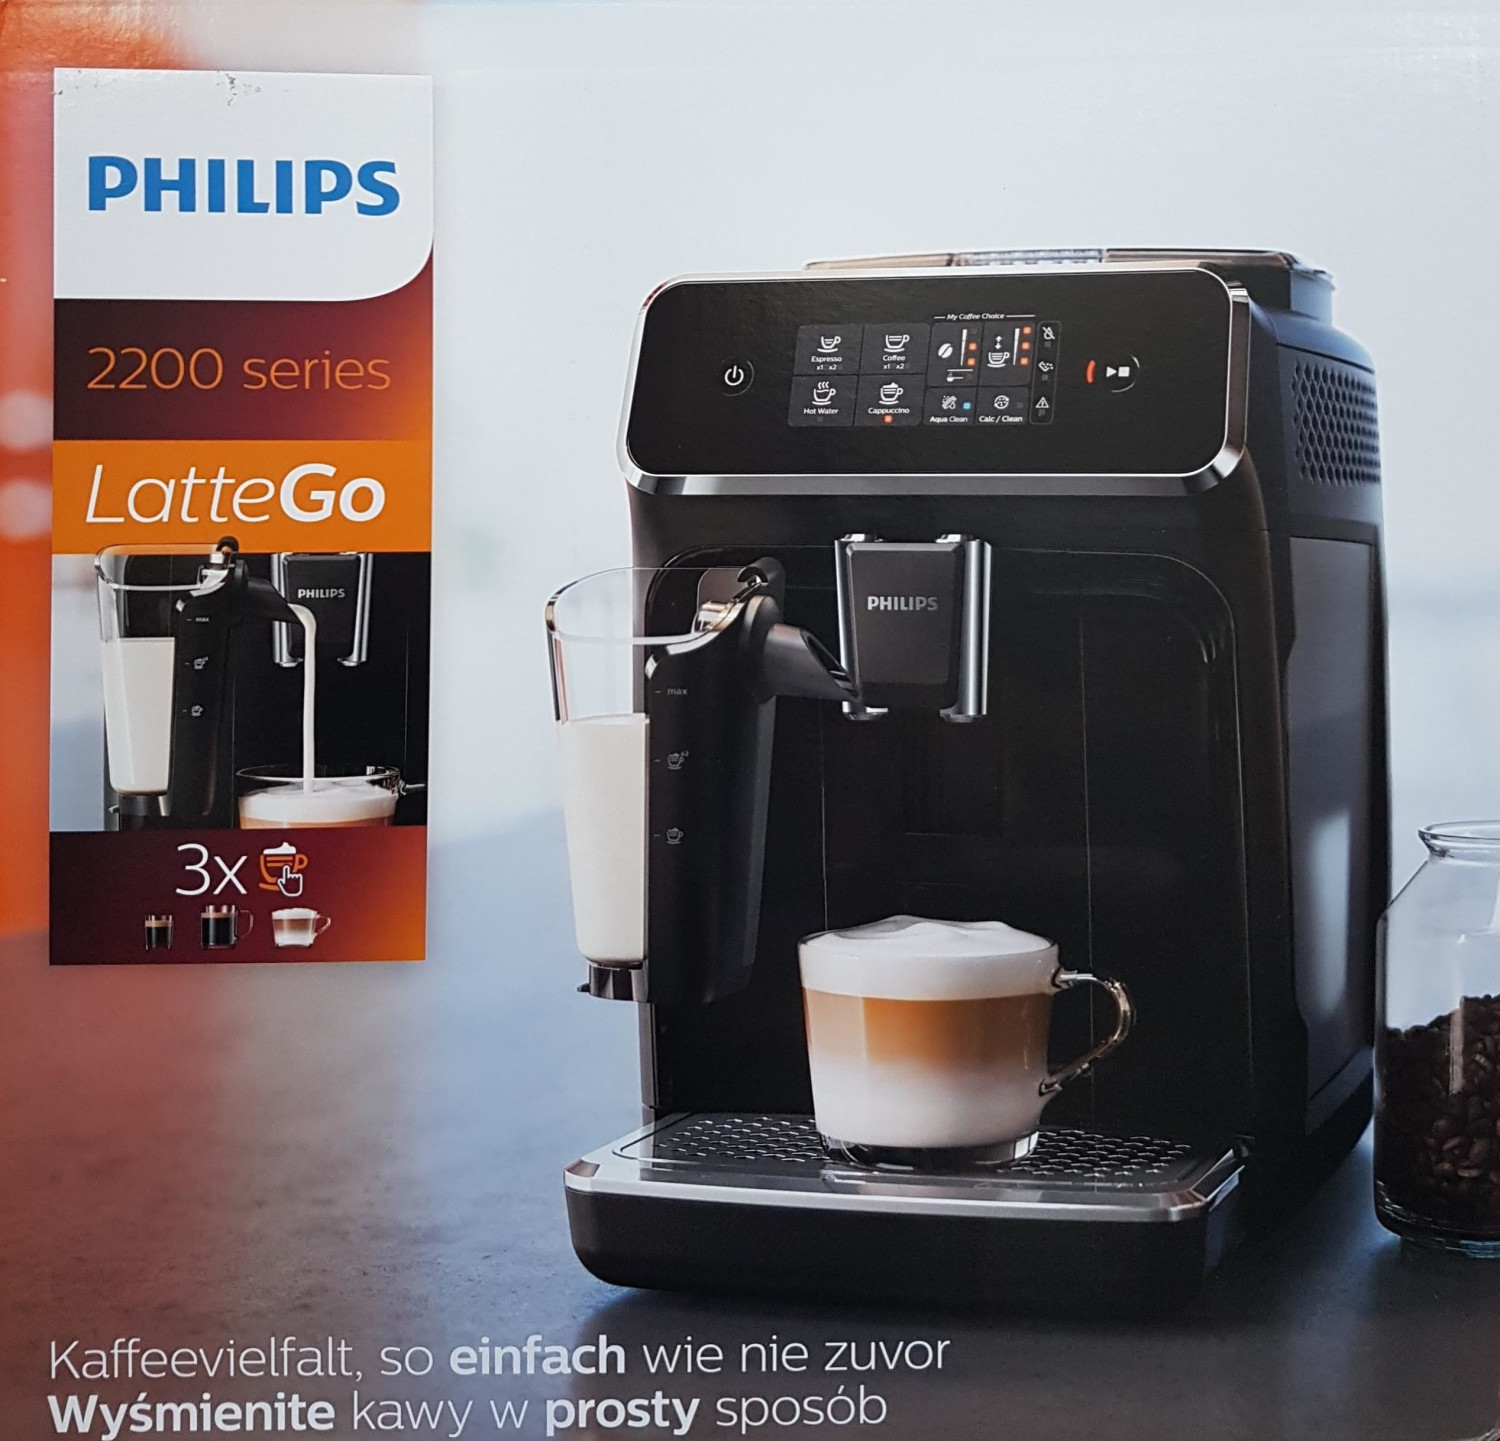 Philips lattego ep2231 40. Philips ep2231/40. Philips 2200 LATTEGO. Philips Ep 2230 LATTEGO Series. Philips Latte go 2200.